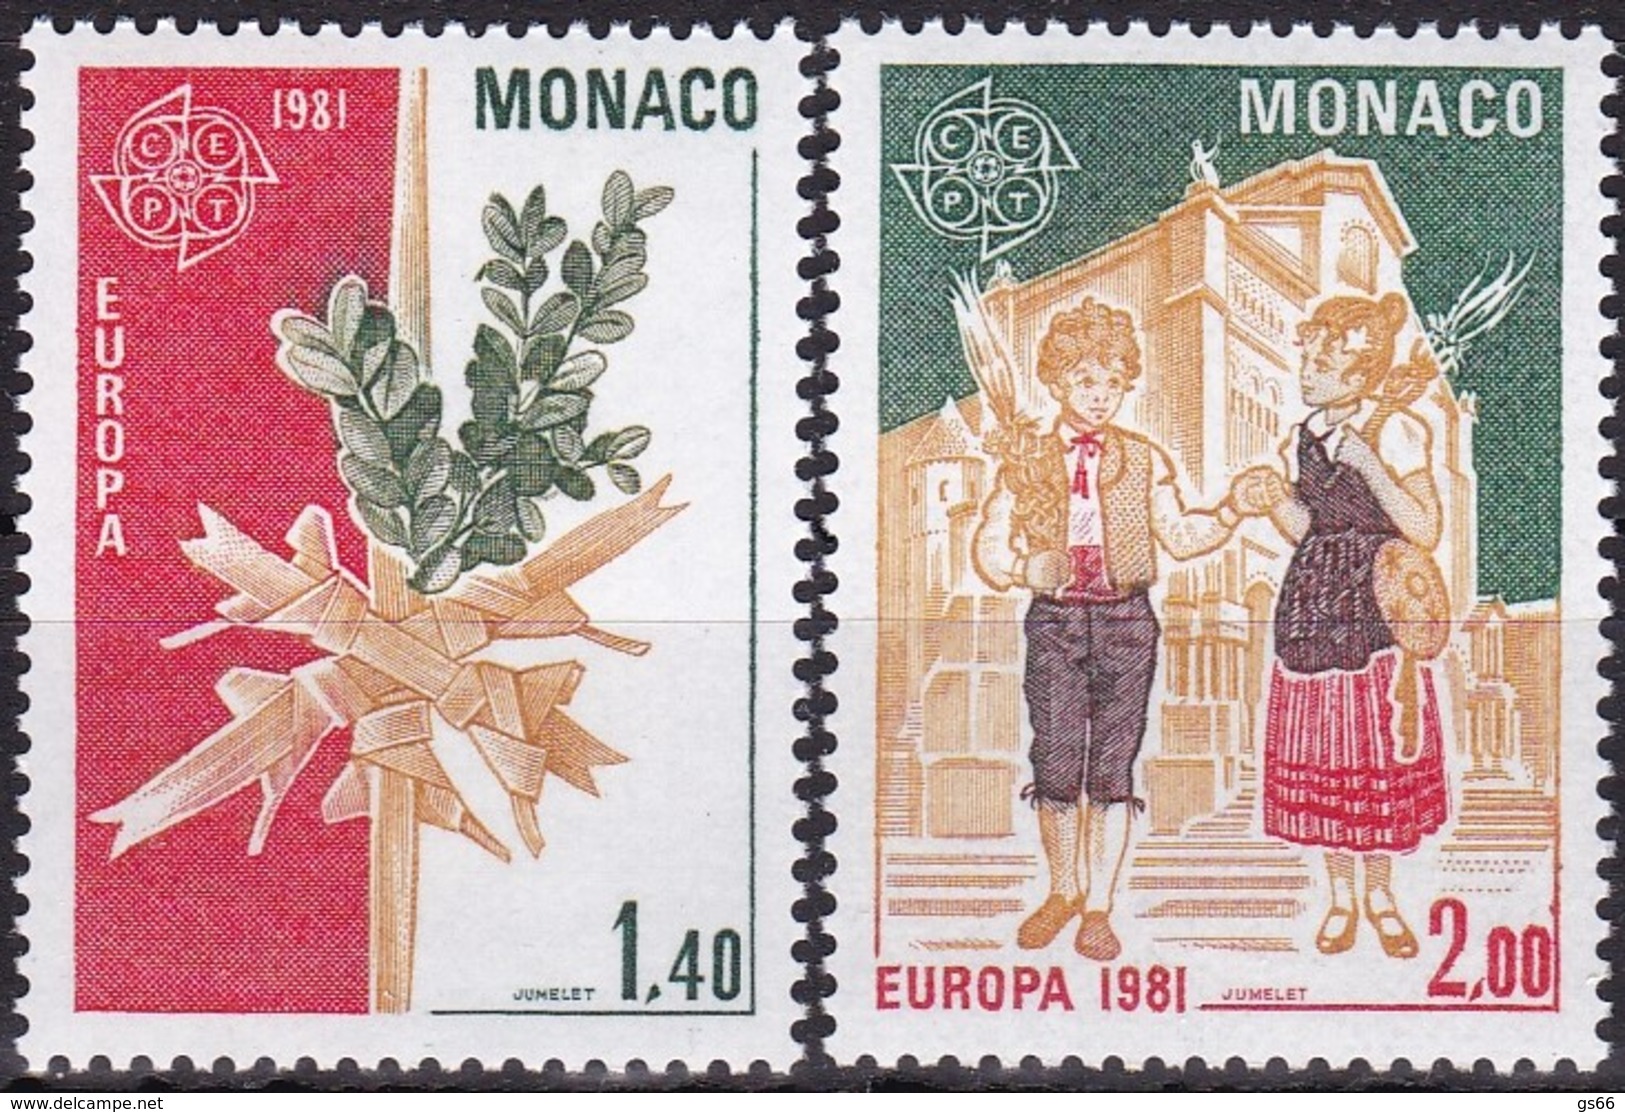 Cept, 1981, Monaco,  Mi.Nr.  1473/74, MNH **,  Europa: - 1981